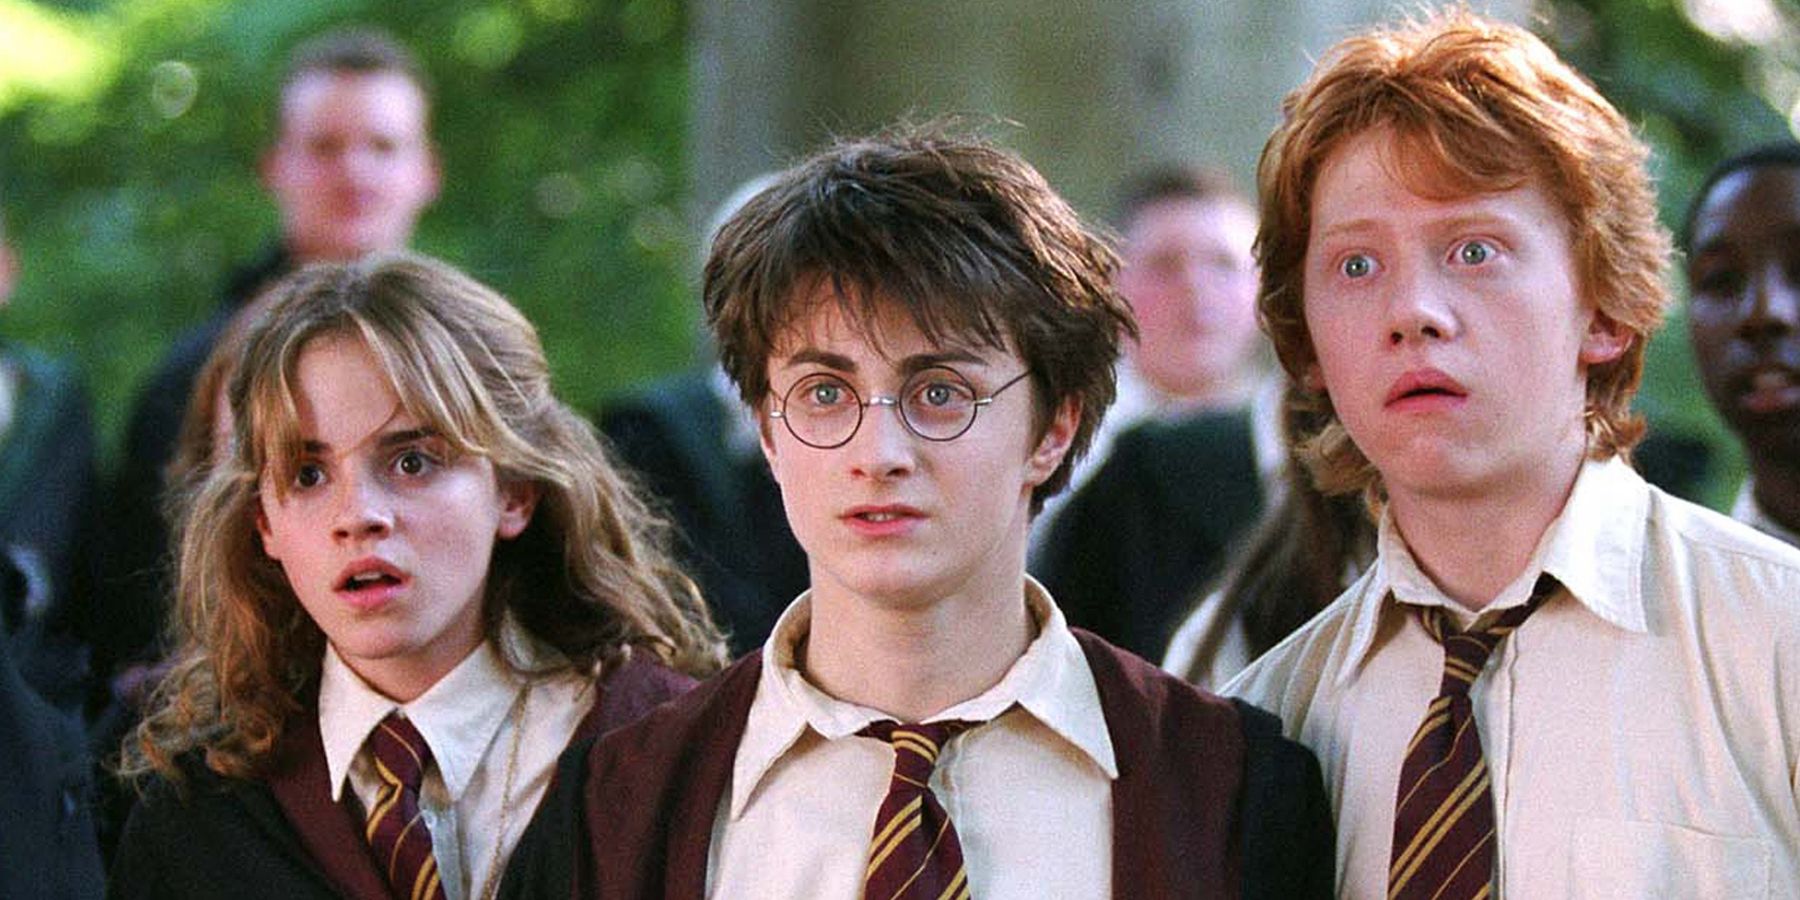 Harry Potter and the Prisoner of Azkaban Golden Trio